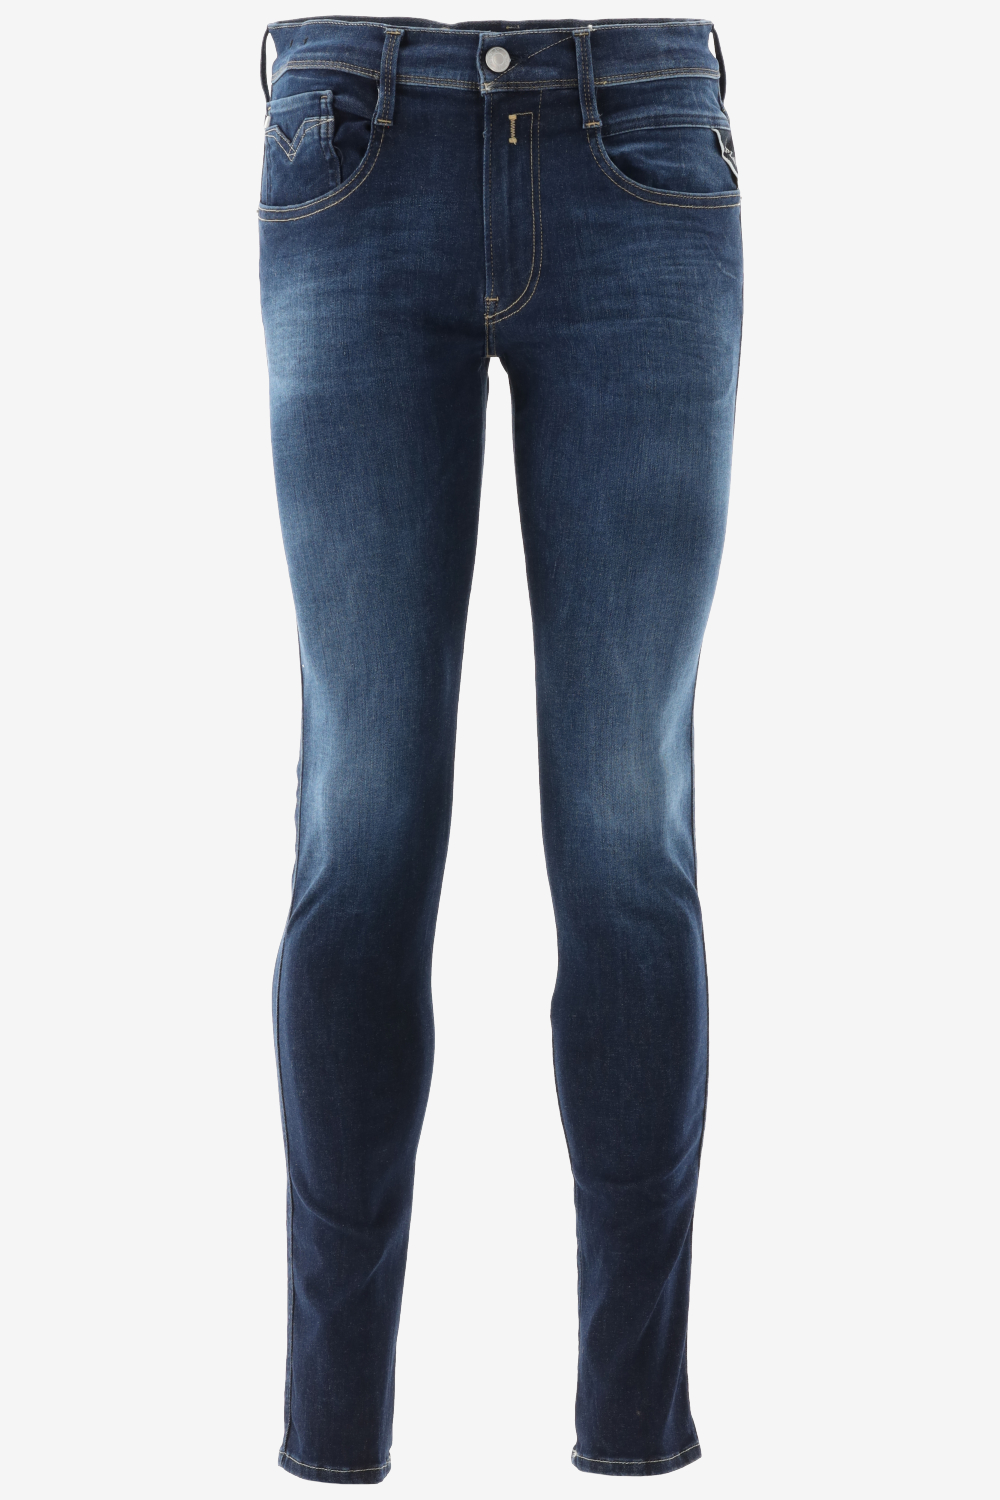 Betrouwbaar scheidsrechter Afkorting Replay Jeans Outlet Sale - T-shirts - Tops - Truien - - Bergmans Fashion  Outlet - Webshop | GRATIS VERZENDING!